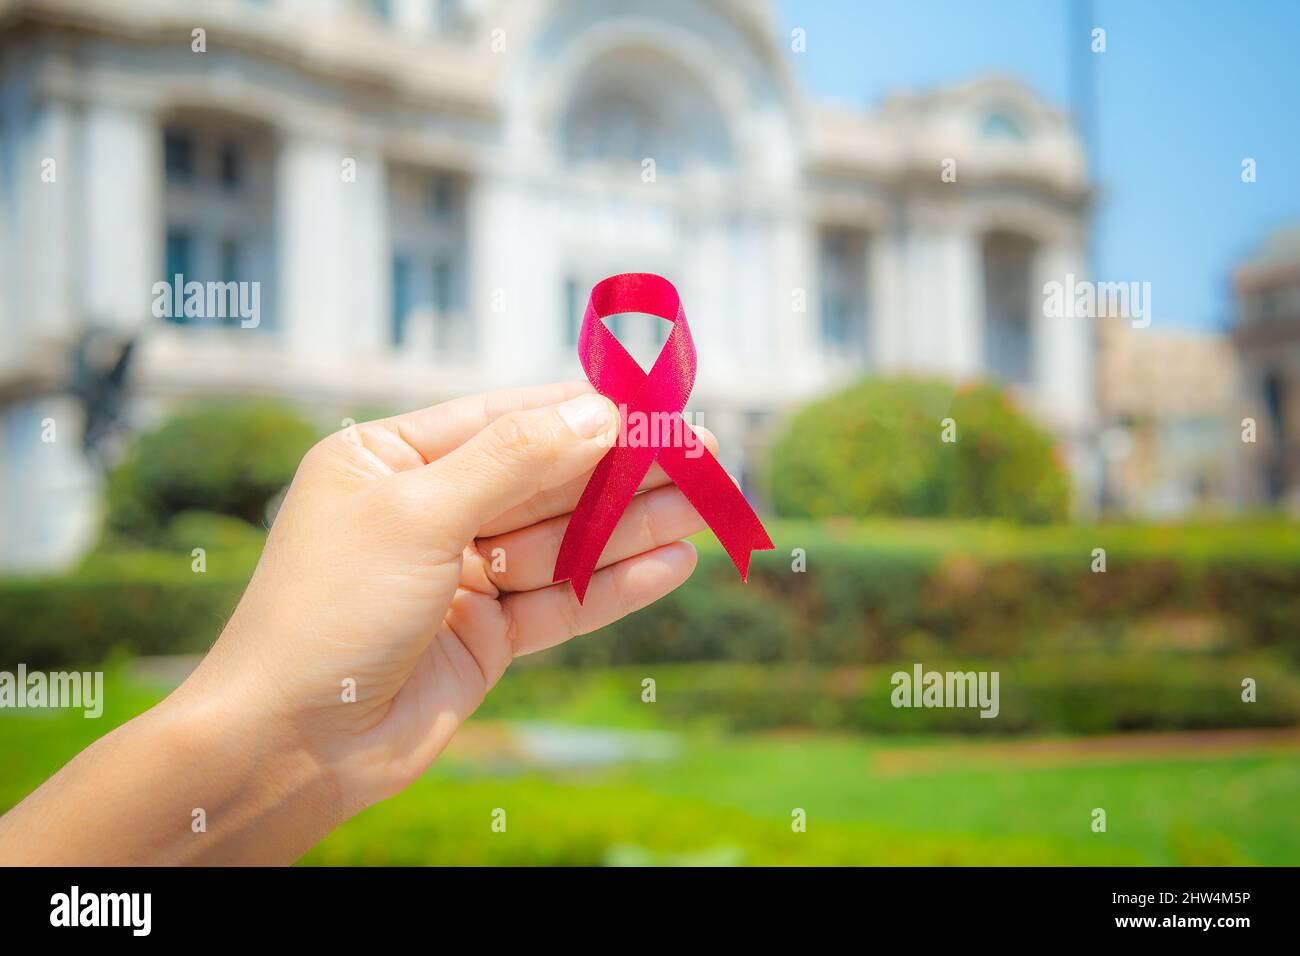 Frau Hände halten roten Band ist auf der Straße und Hintergrund ist nicht fokussiert. Konzept der Medizin, Kampagne zum Welt-AIDS-Tag. Stockfoto